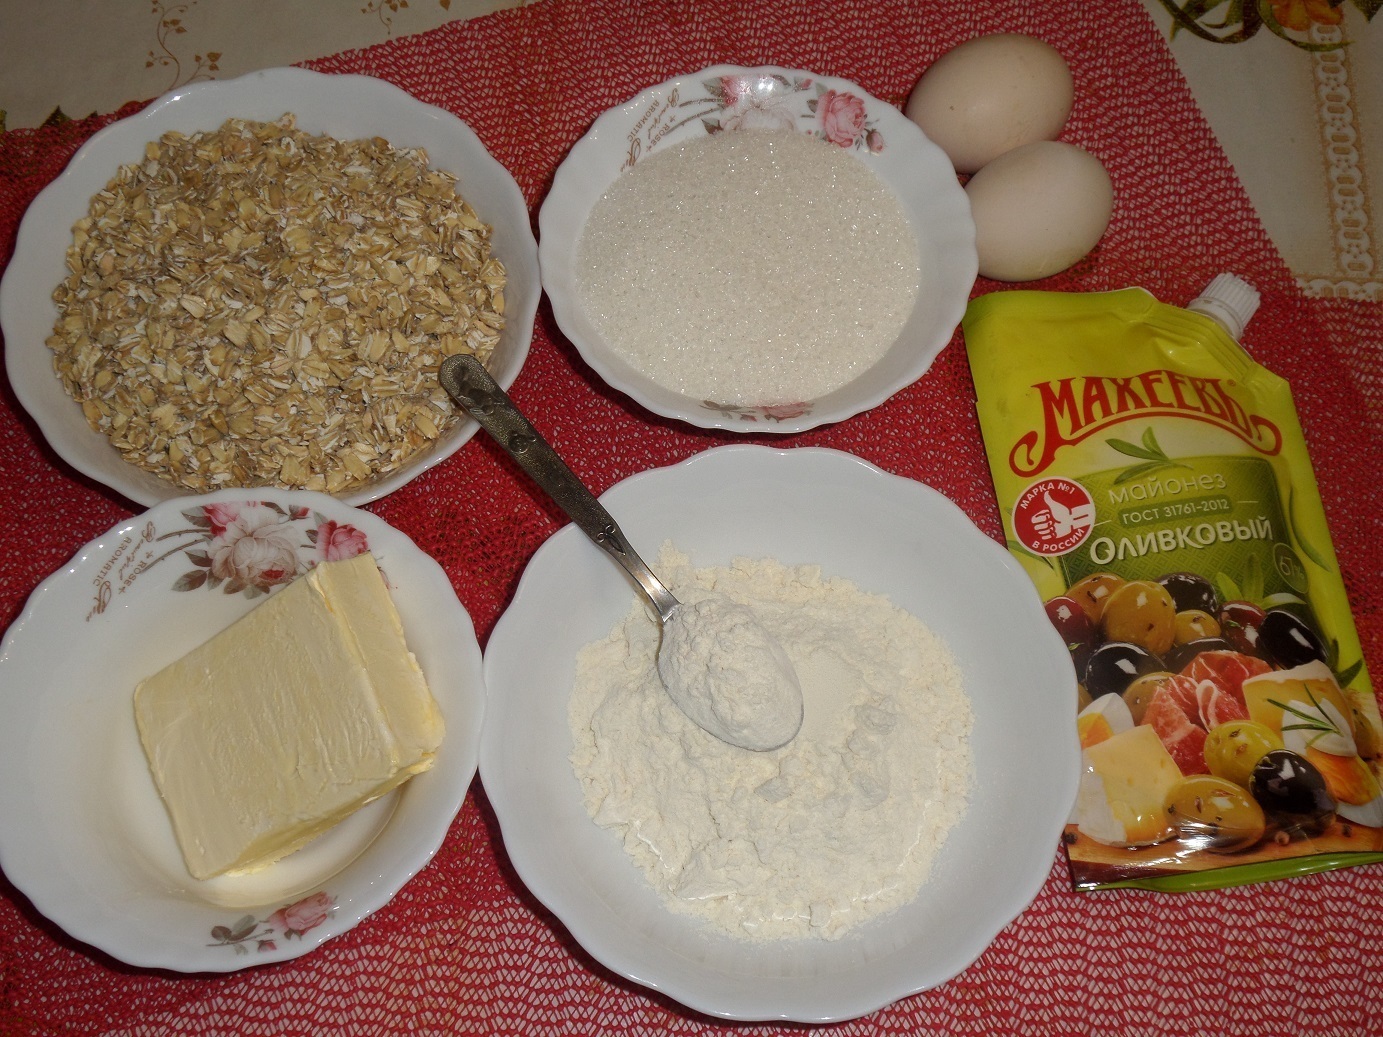 Овсяное печенье "аромат праздника по-махеевски" : шаг 1